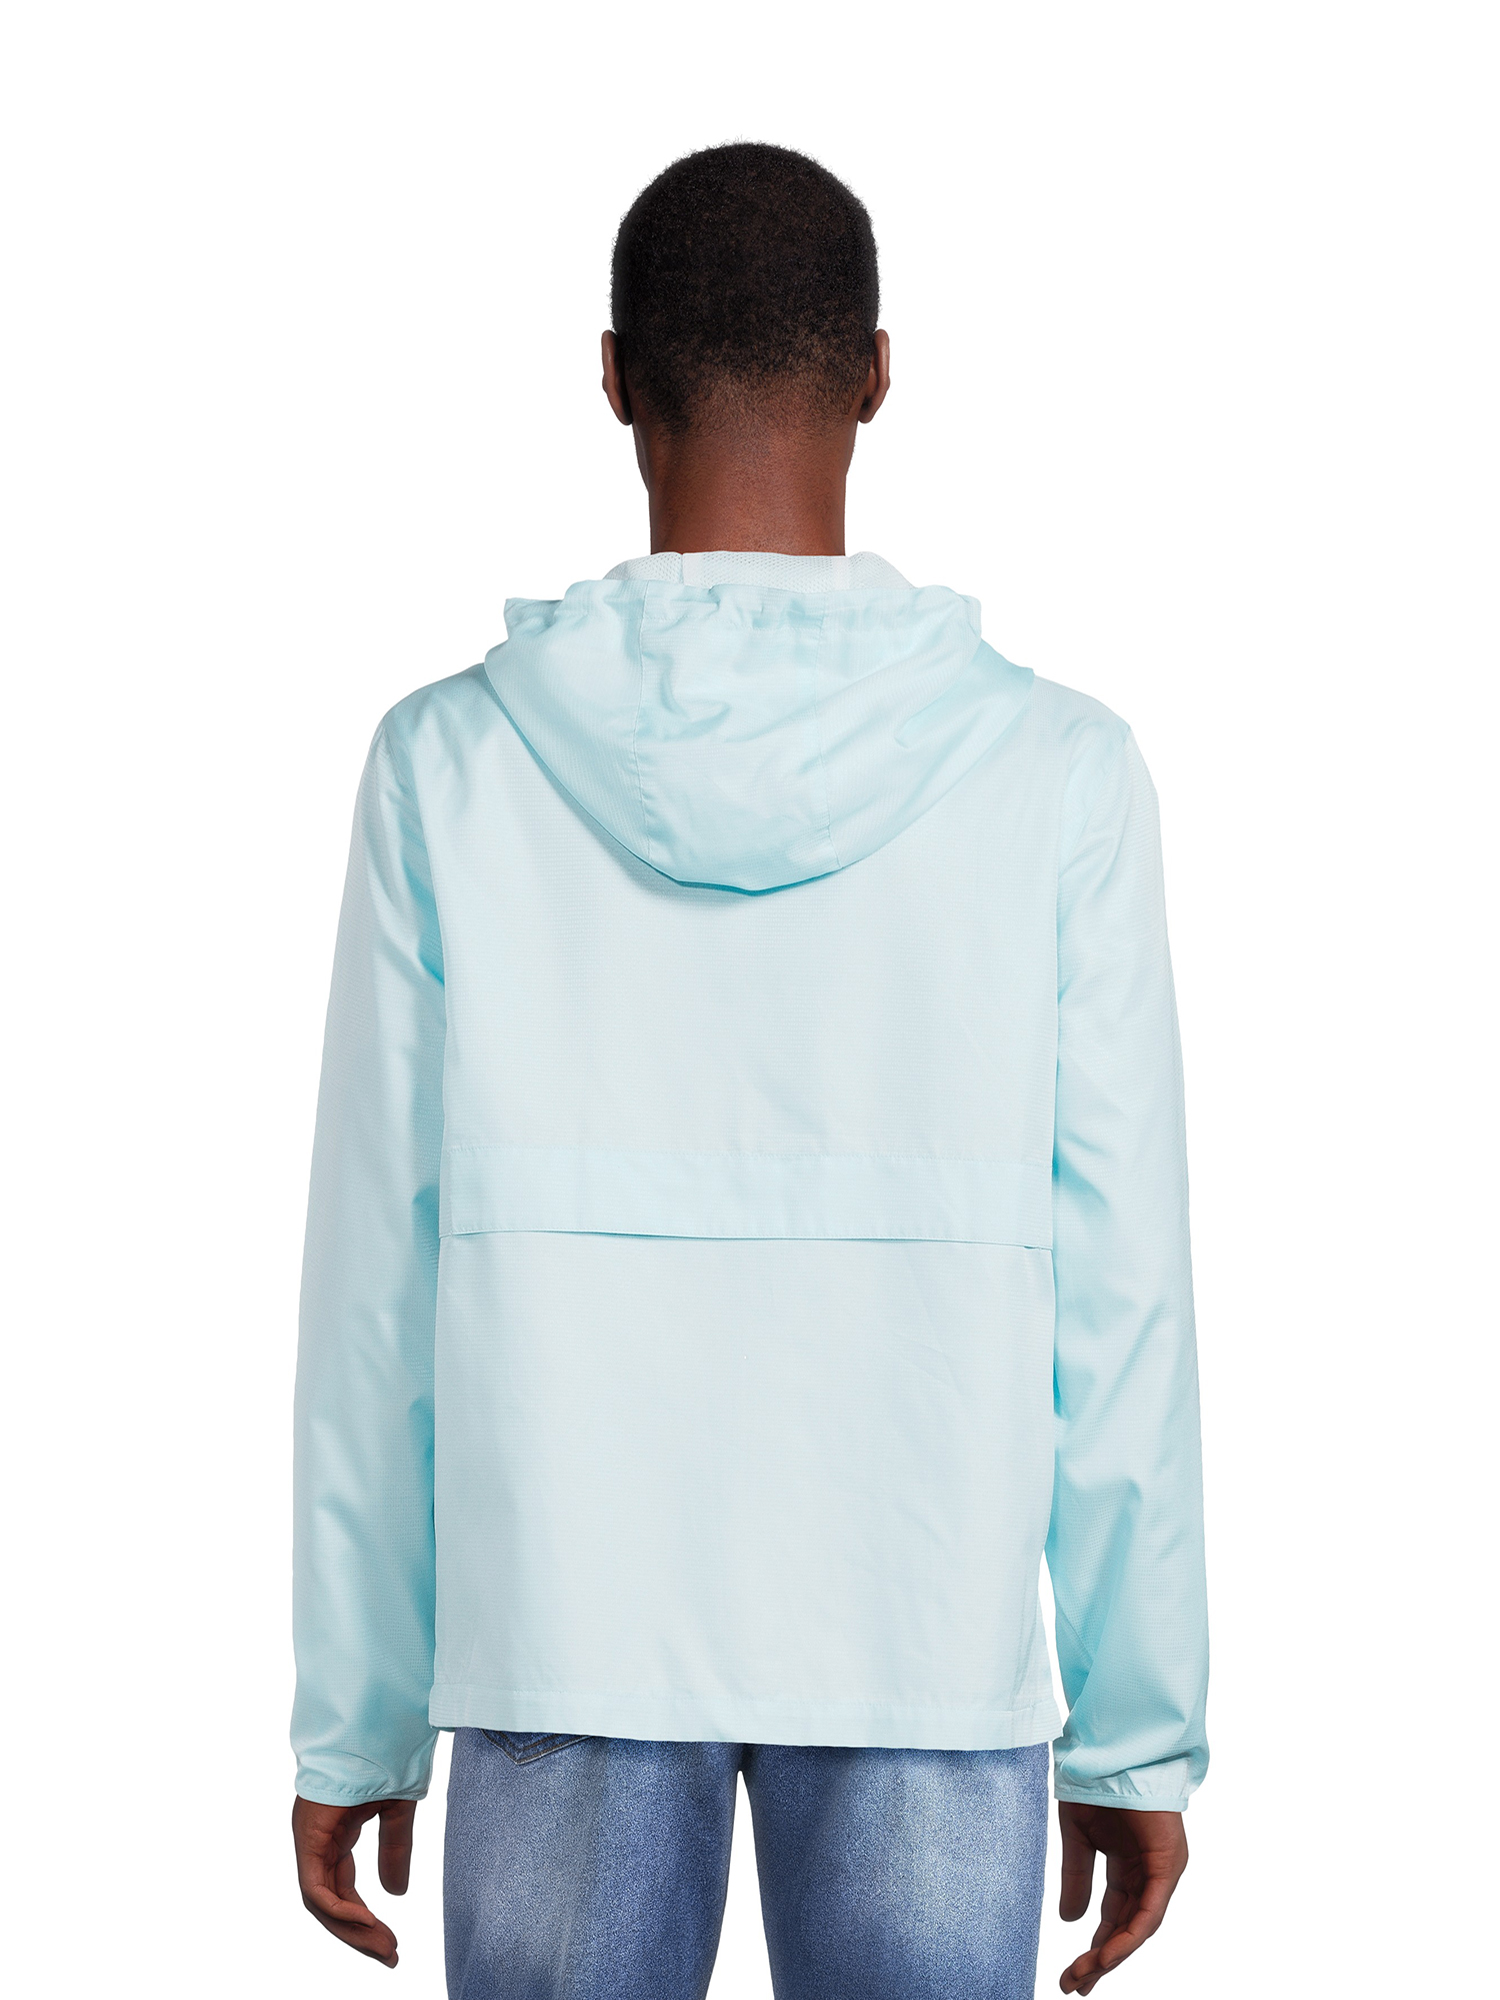 Reebok Men’s Full Zip Windbreaker Jacket, Sizes M-3XL - Walmart.com